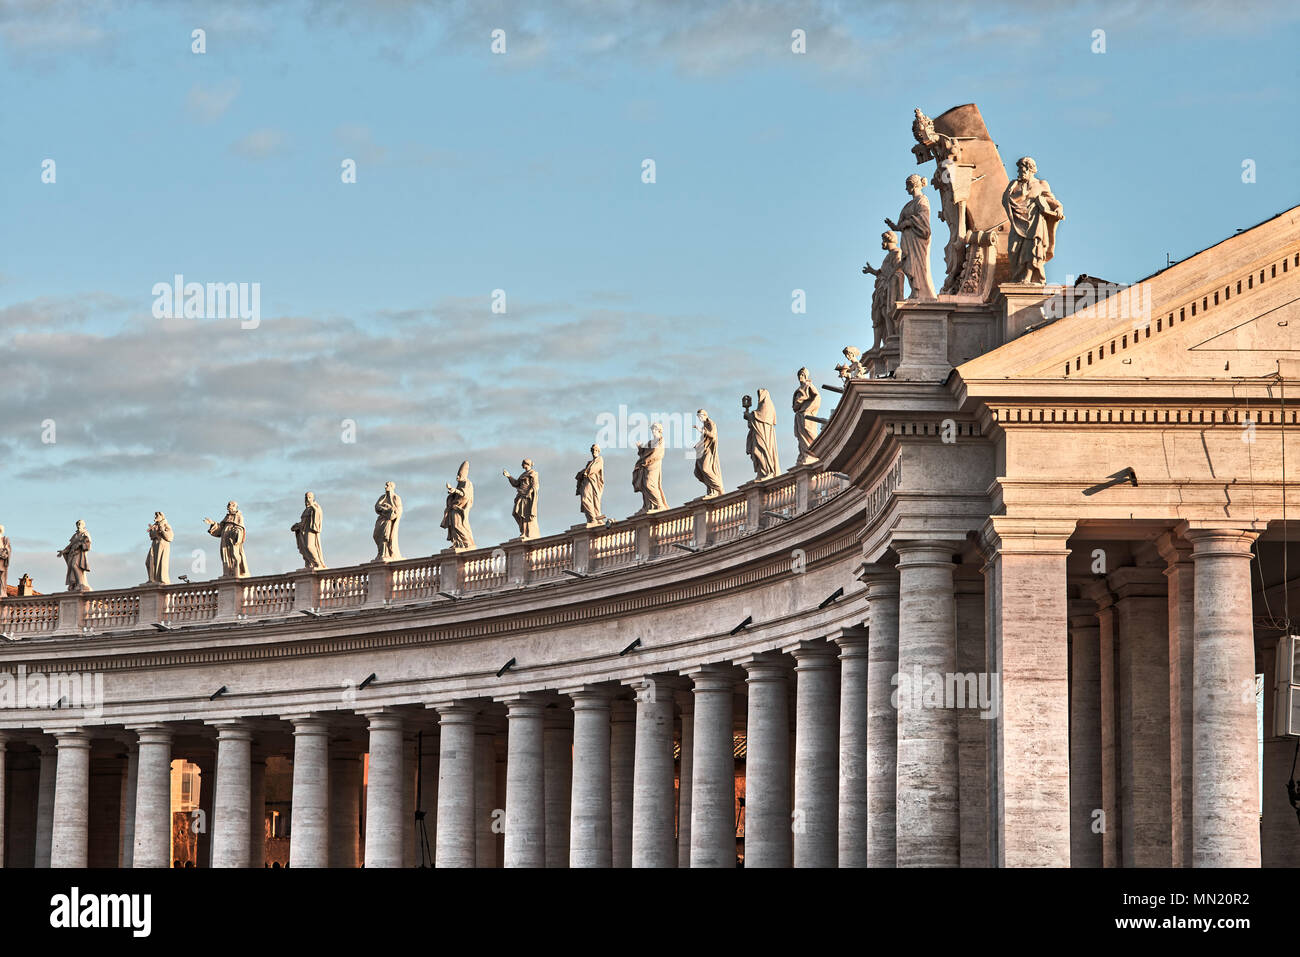 Roma, Basilica di San Pietro in Vaticano, statue dettaglio Foto Stock